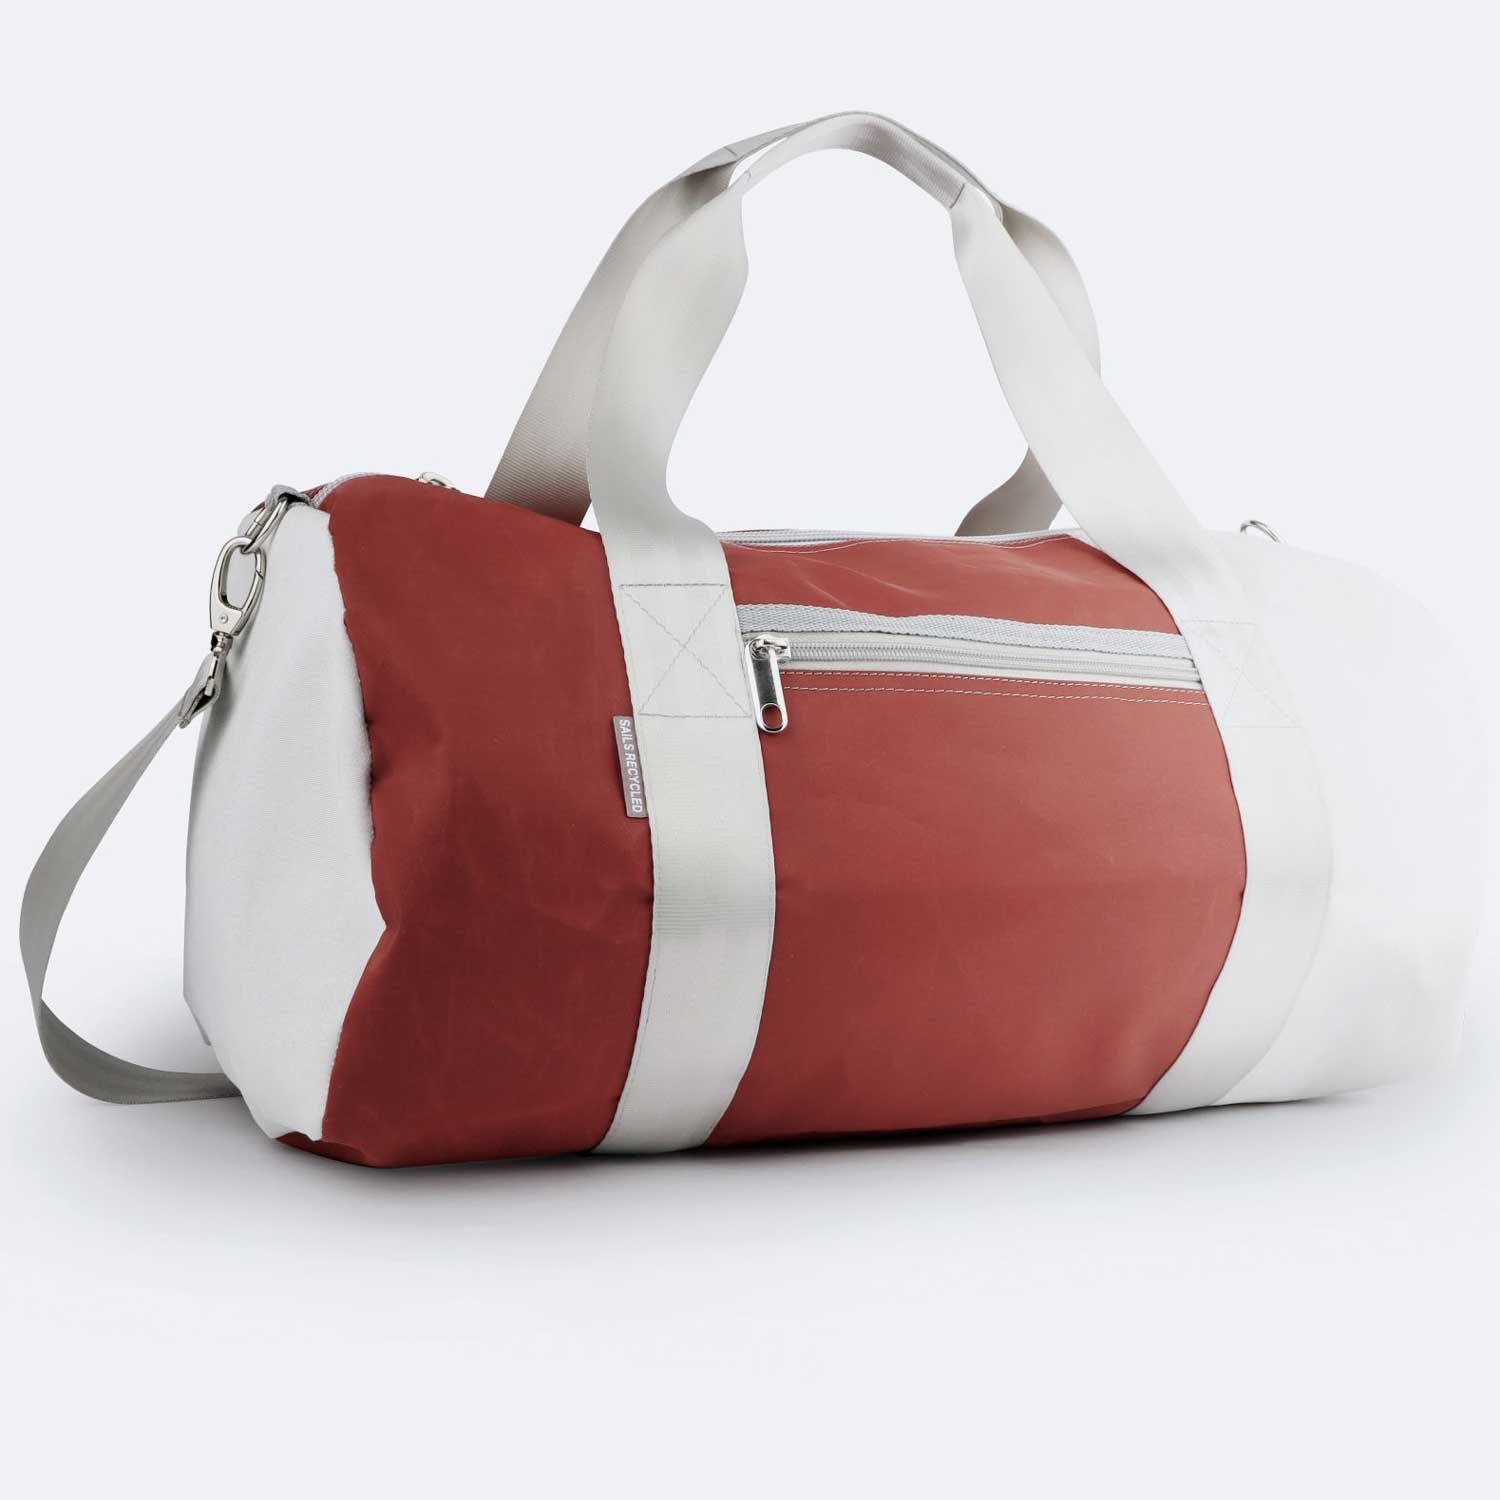 Pirat weiß-braun 360Grad Reisetasche Segeltuch Umhänge-Tasche